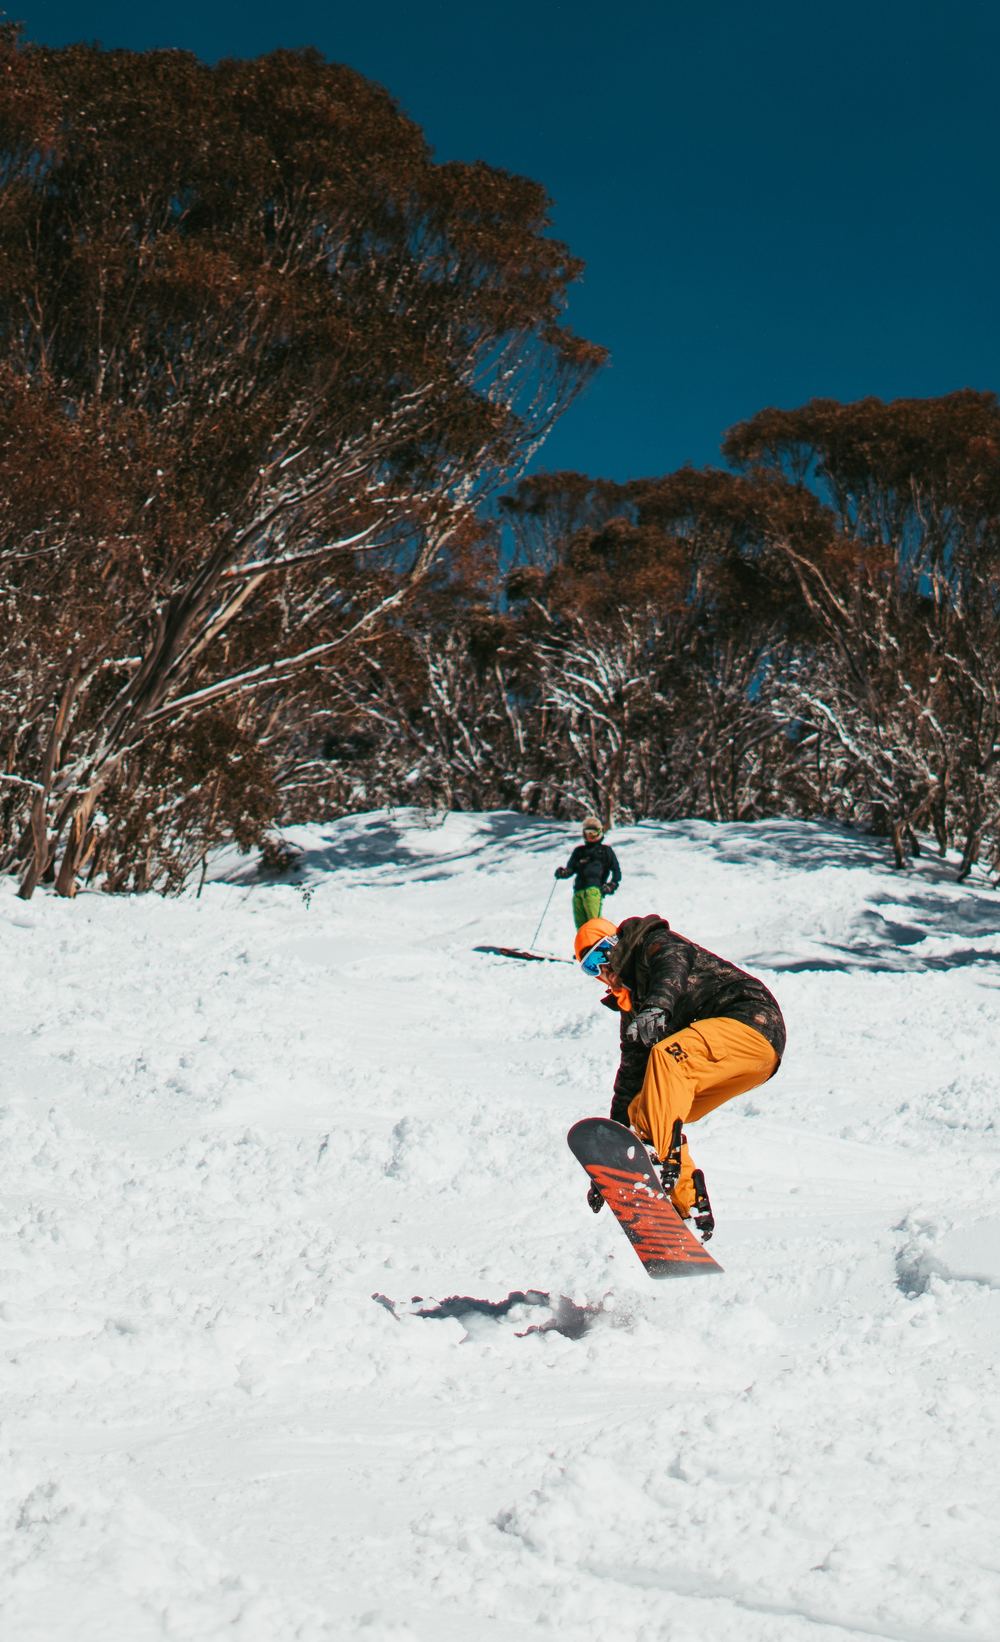 is skiing or snowboarding easier